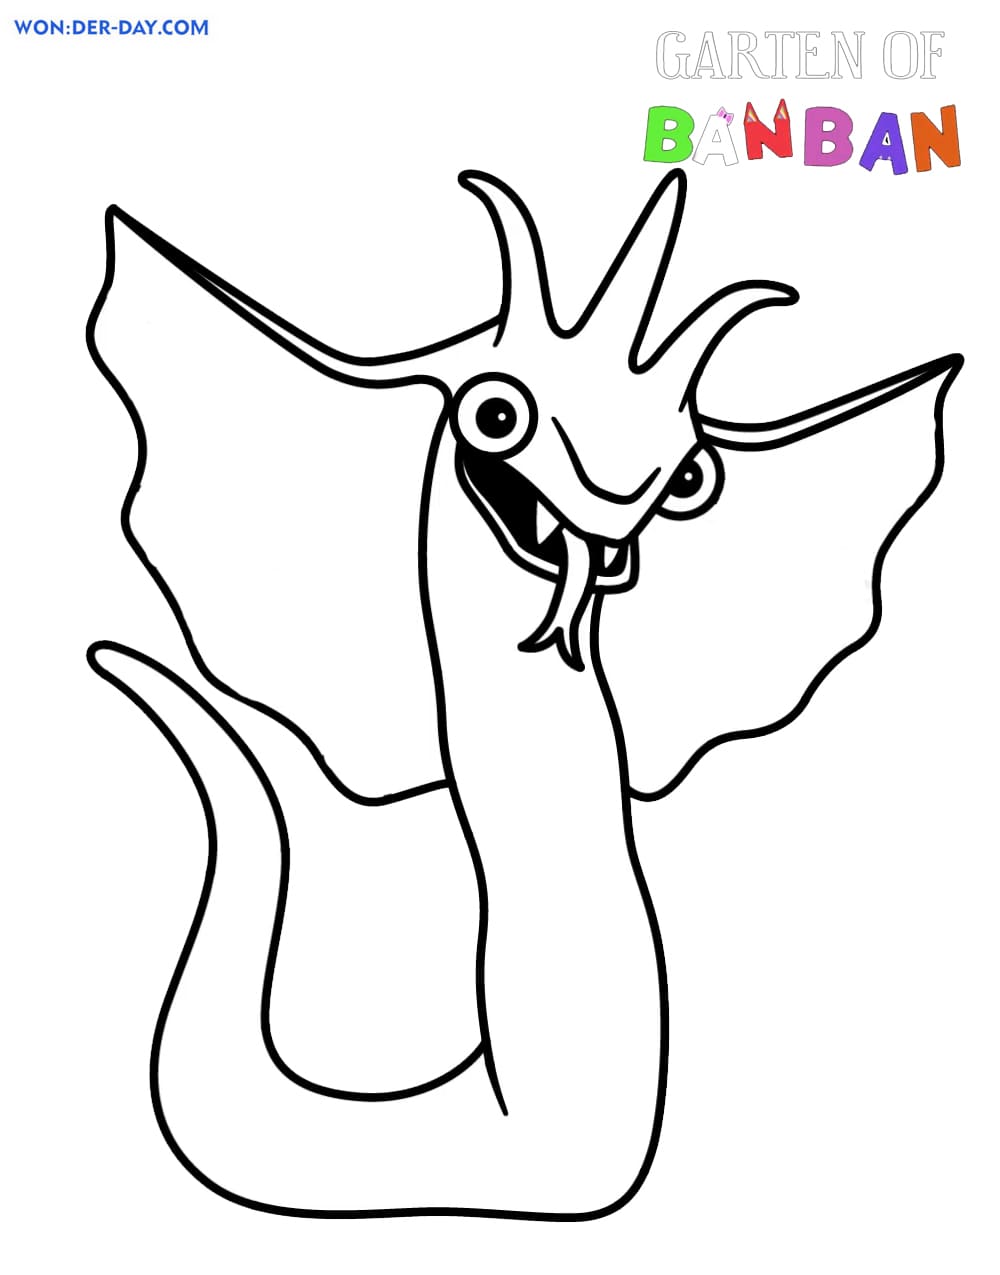 Desenhos para colorir - Jardim de Banban 3 – Se divertindo com